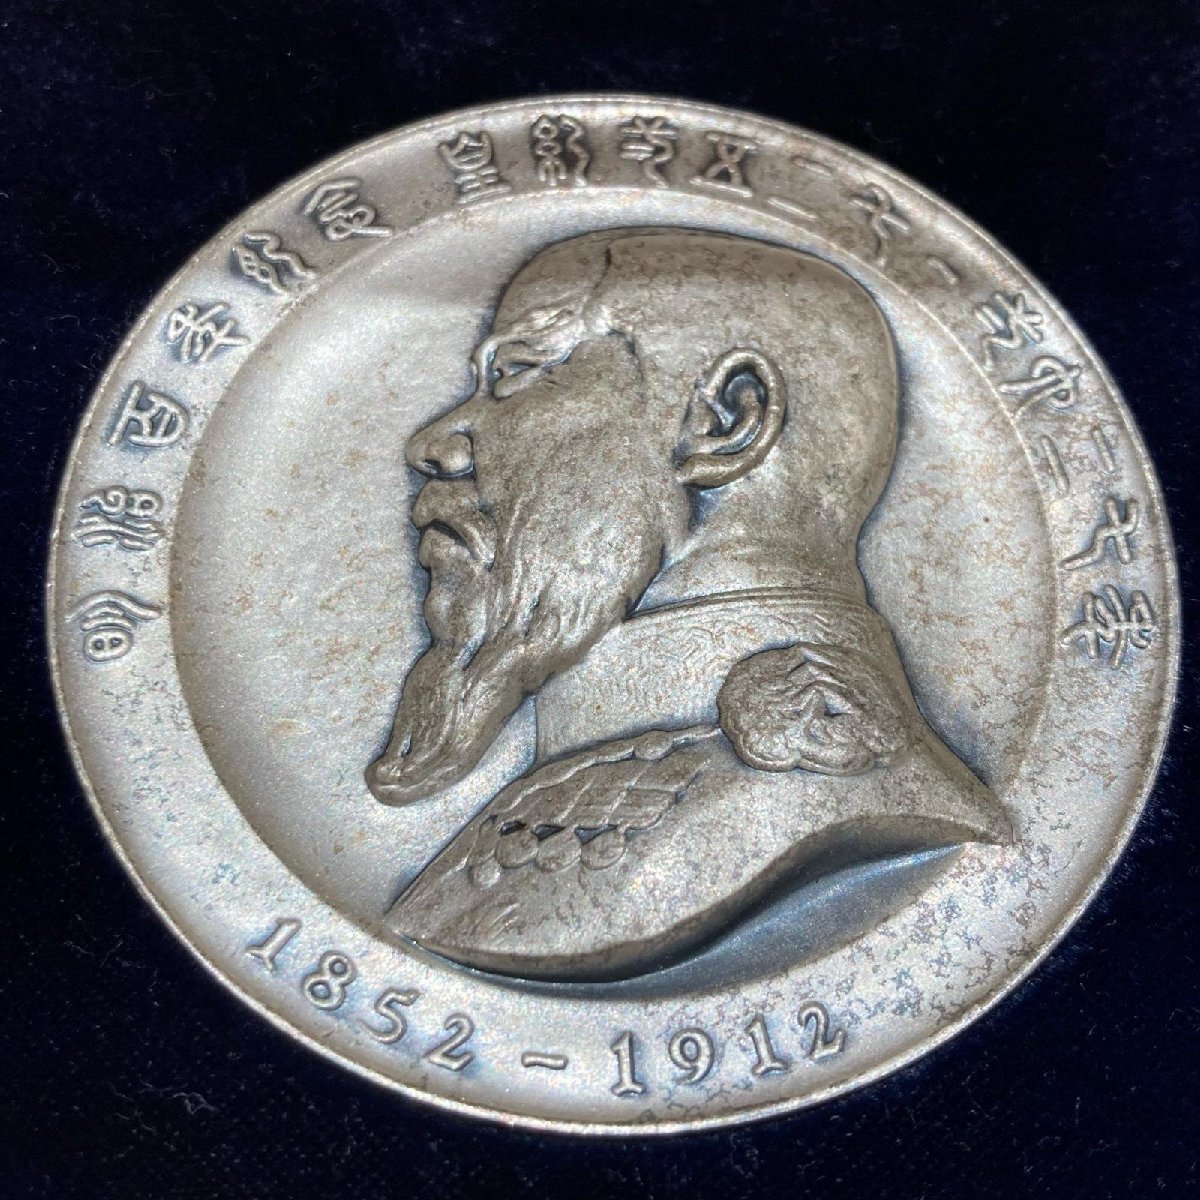 明治百年記念 明治天皇御肖像牌 1968 純銀メダル コイン 総重量124.0g_画像2